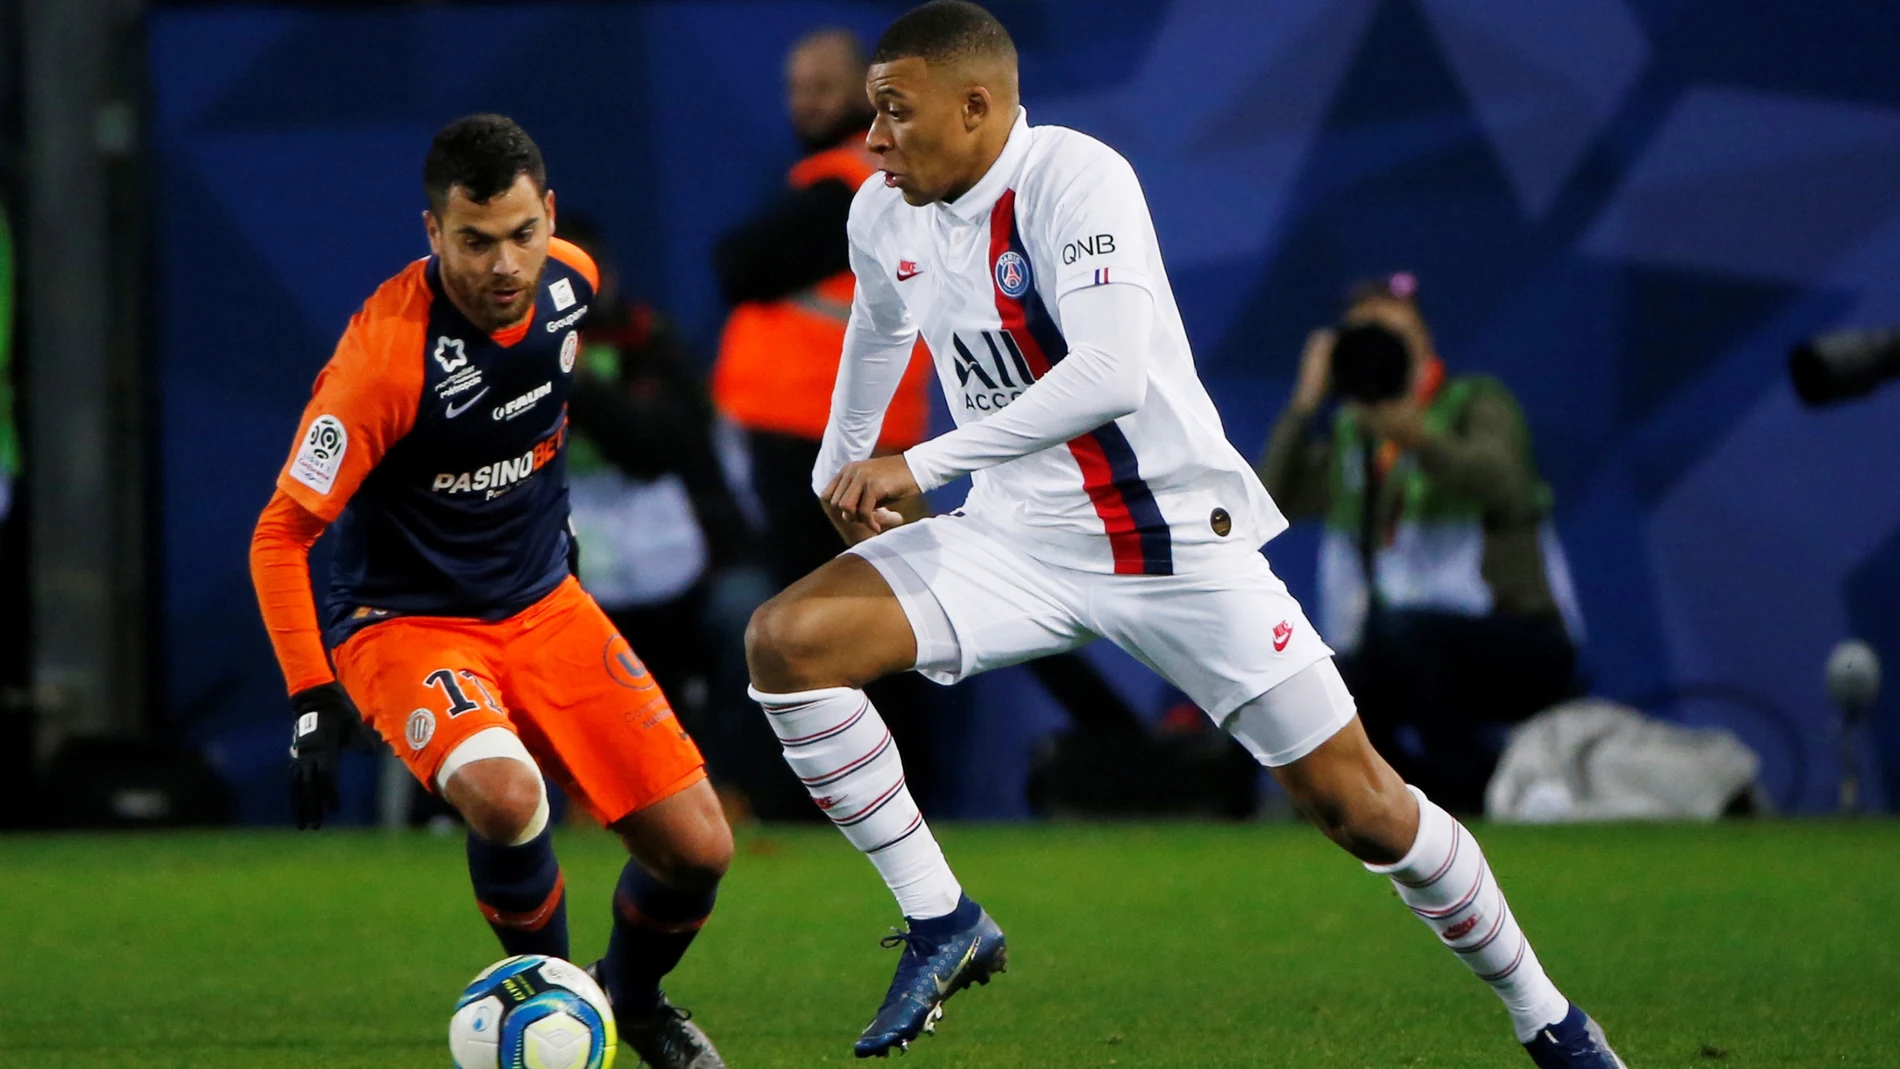 Ligue 1 - Montpellier vs Paris St Germain